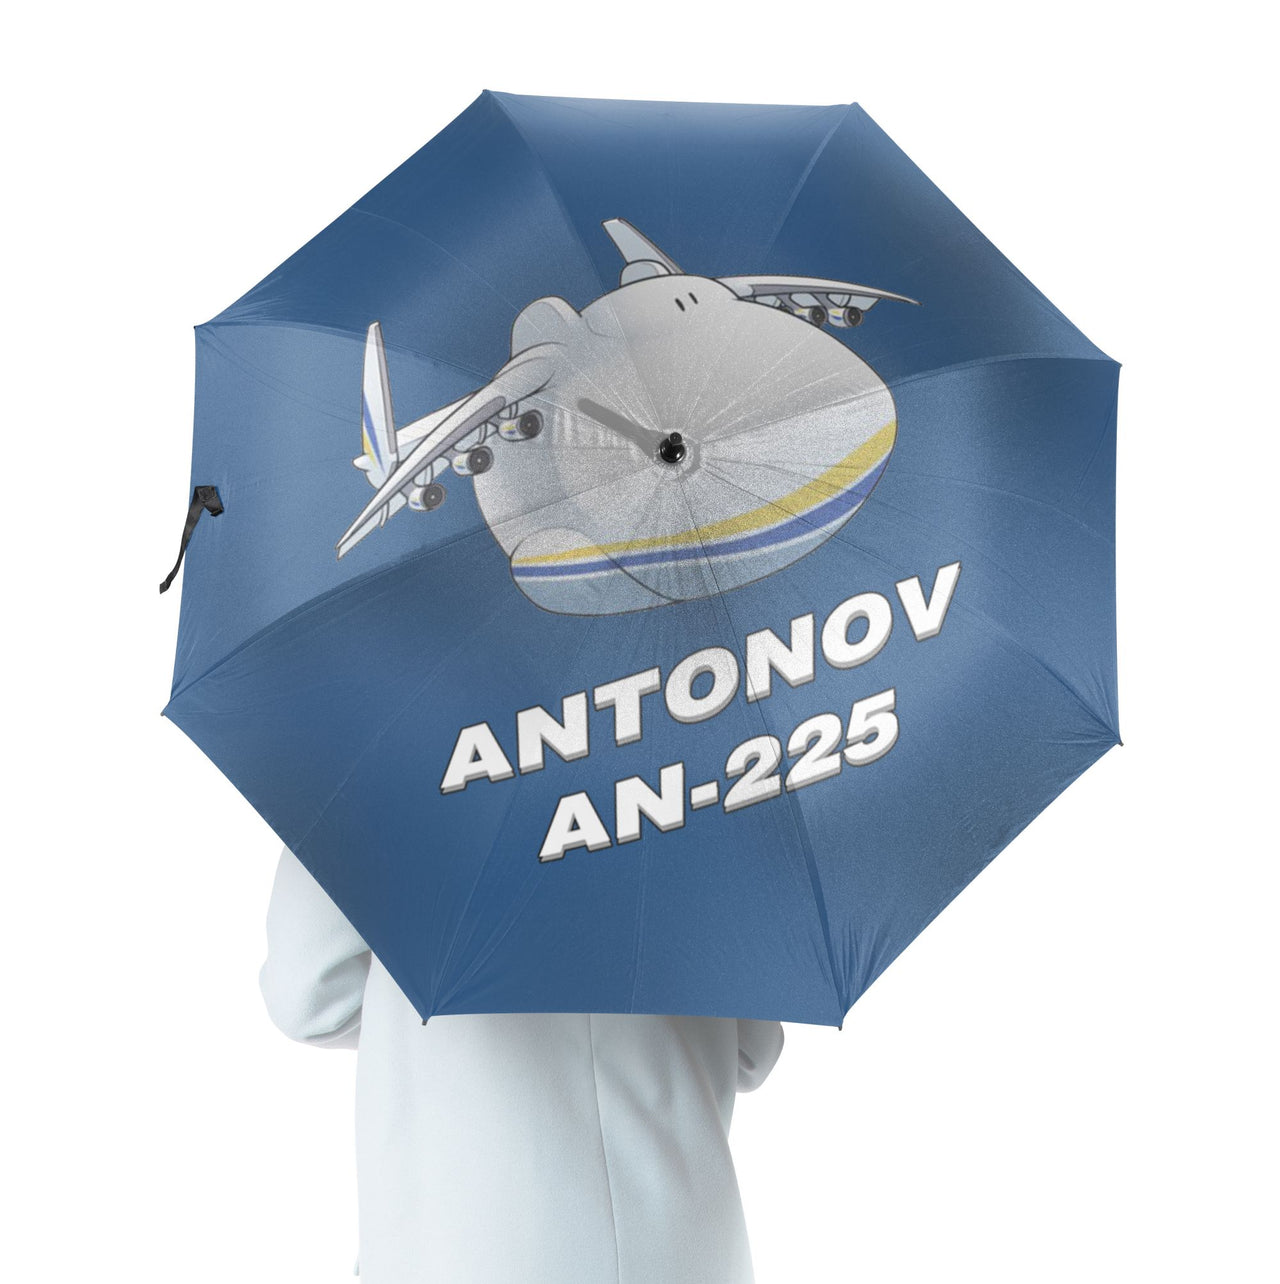 Antonov AN-225 (21) Designed Umbrella